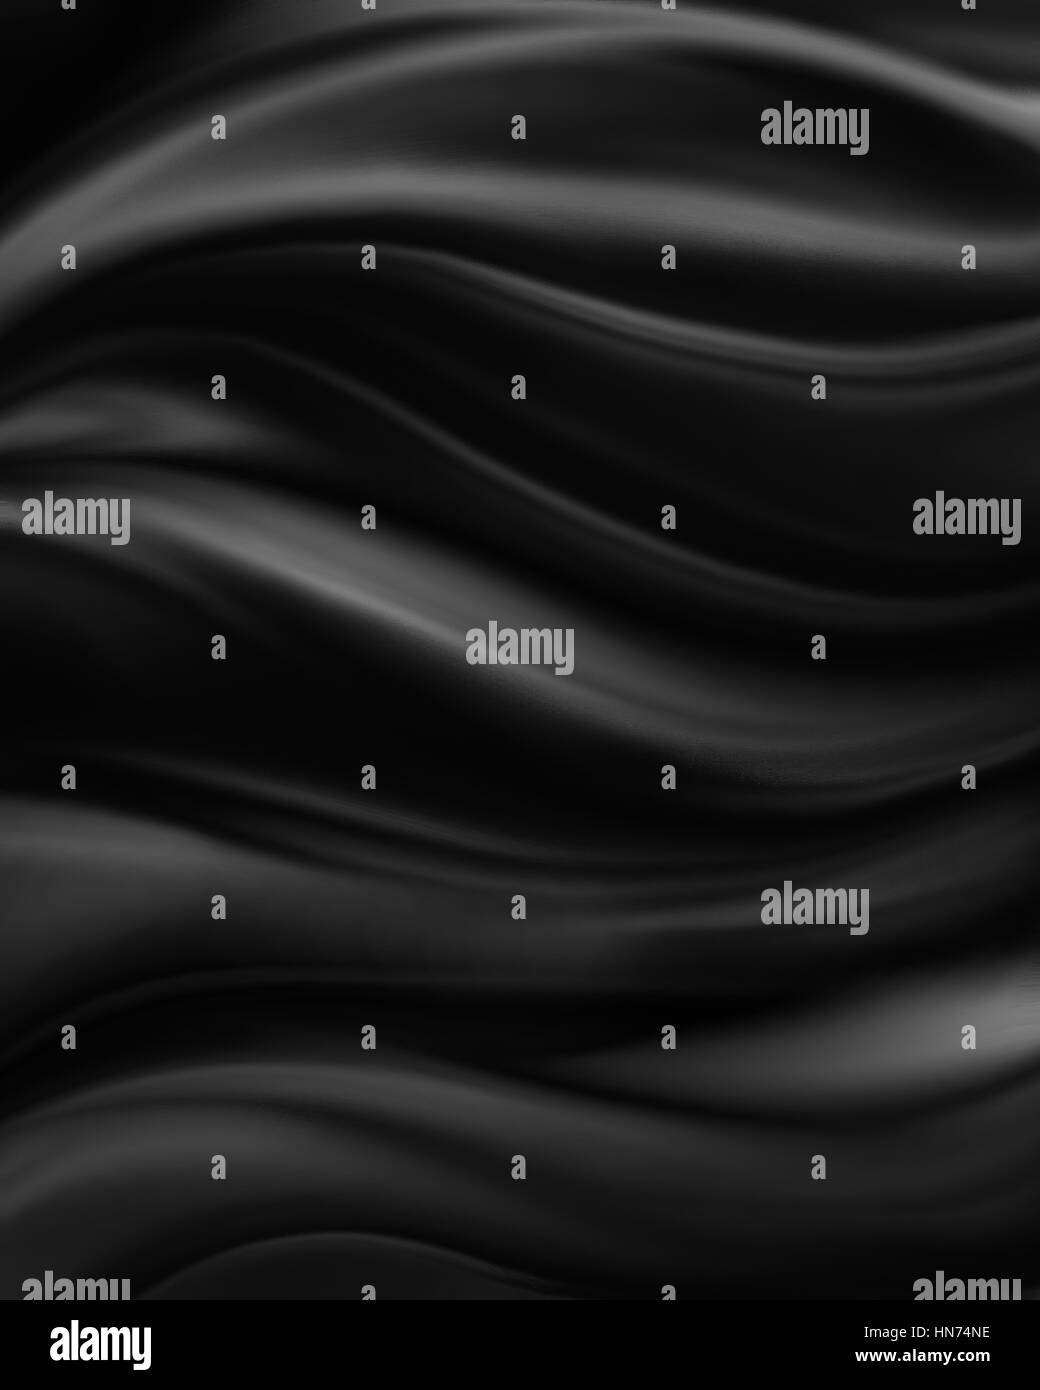 Résumé fond noir d'un chiffon ou d'ondes liquides illustration de plis ondulés de la texture de la soie ou satin matière velours gris ou fond de luxe ou wa Banque D'Images